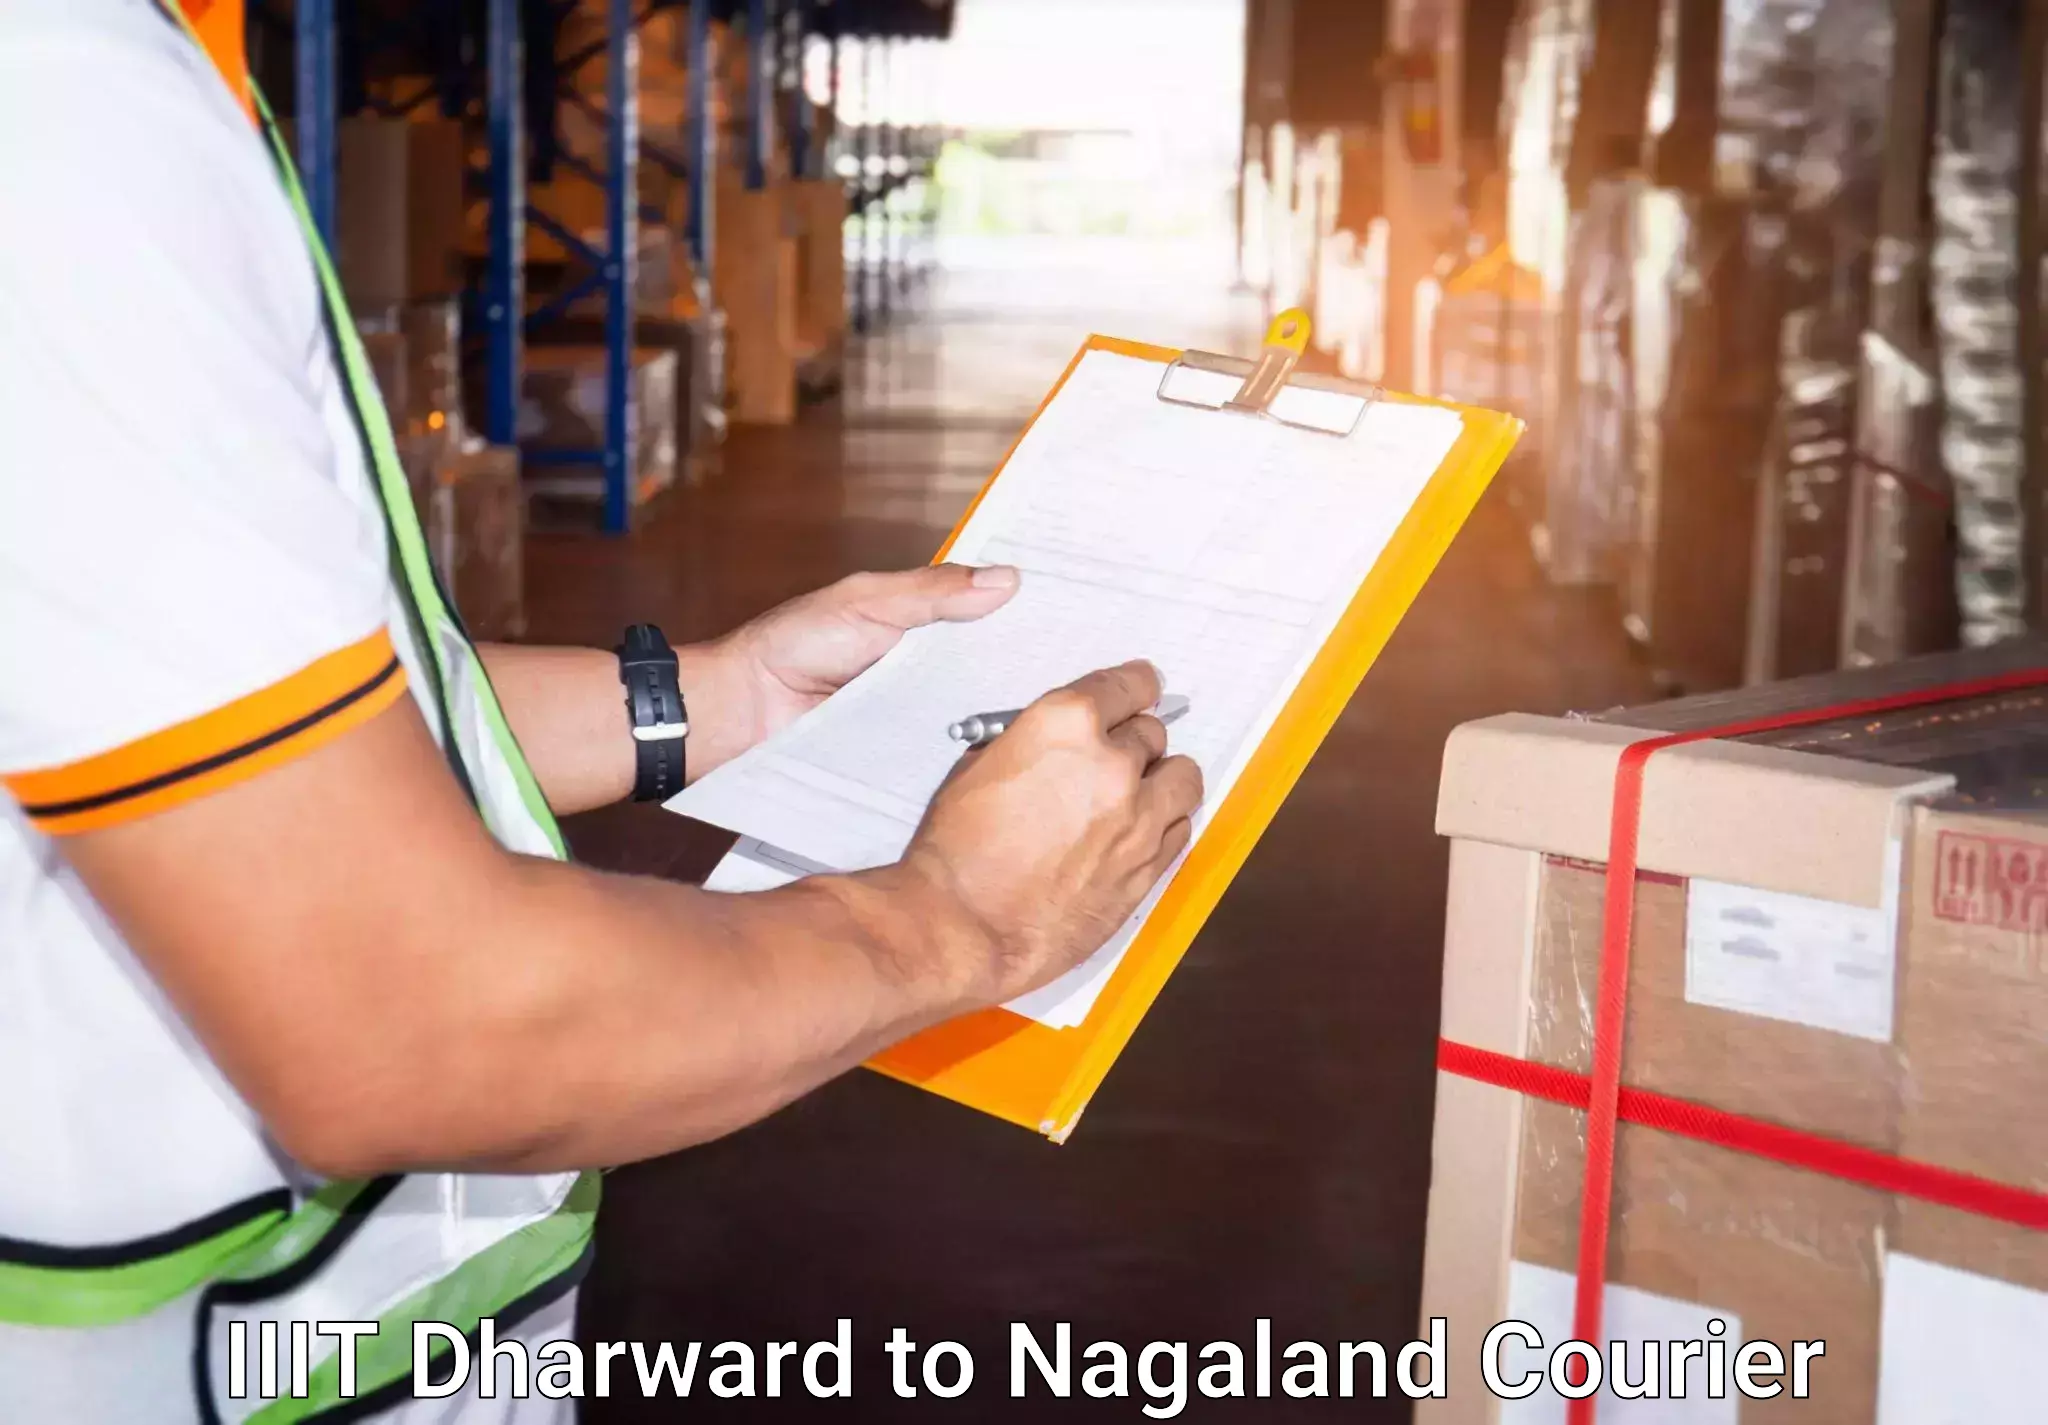 Global baggage shipping IIIT Dharward to Nagaland